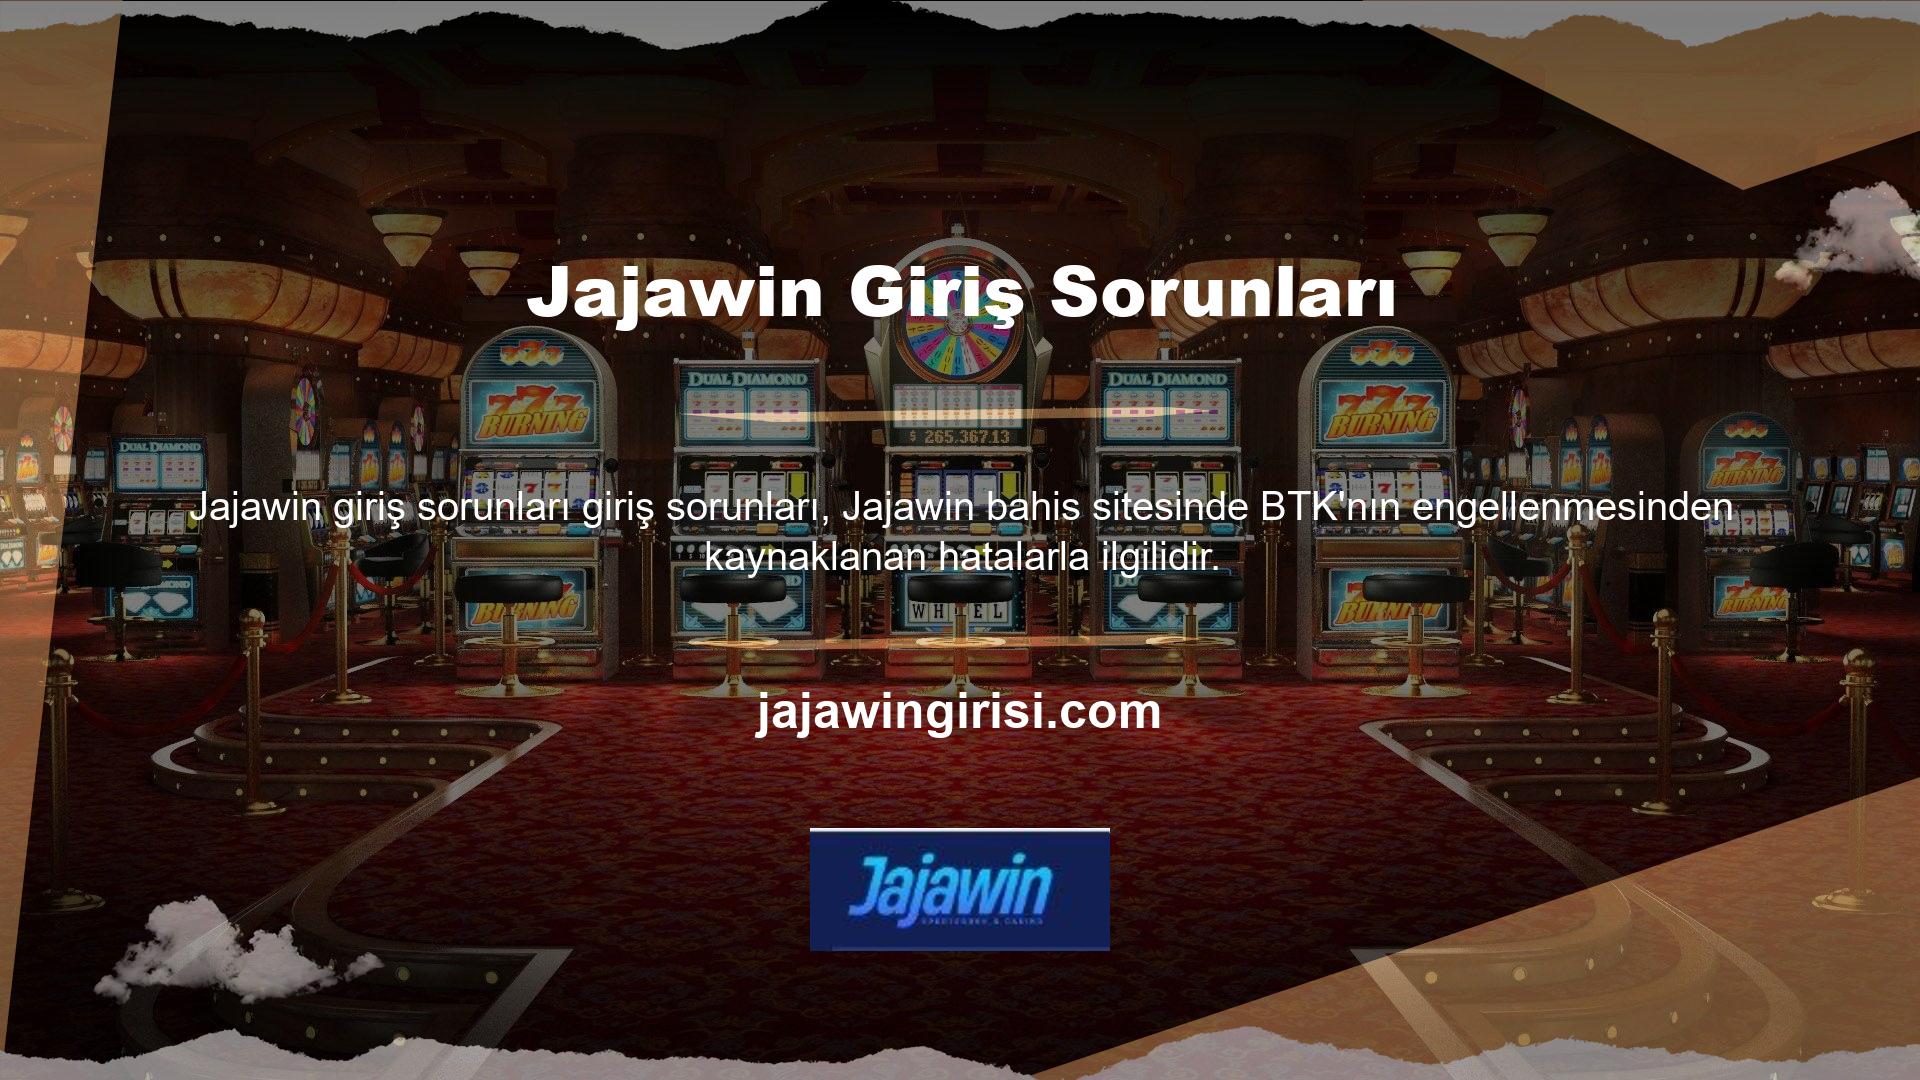 Bunun ve Jajawin giriş sorunlarının üstesinden gelmek için site, sitesini hızla yeni bir adrese taşıdı